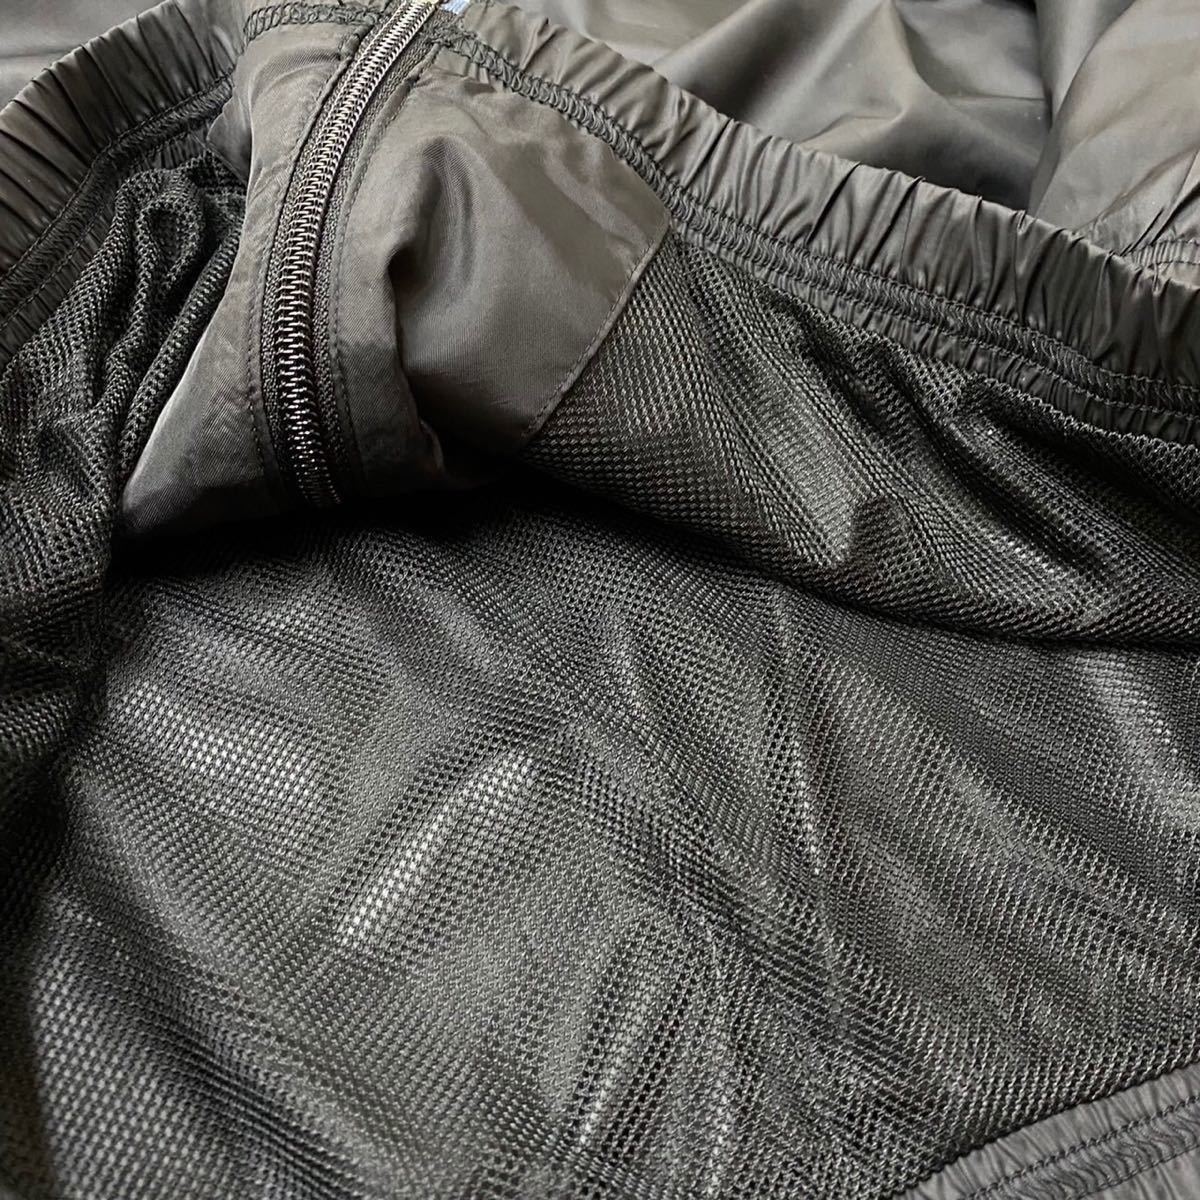 Mサイズ 新品 adidas ウィンドブレーカー セットアップ トラックスーツ ジャケット パンツ 上下セット 黒 白 ウインドブレーカー ジャージ_画像5